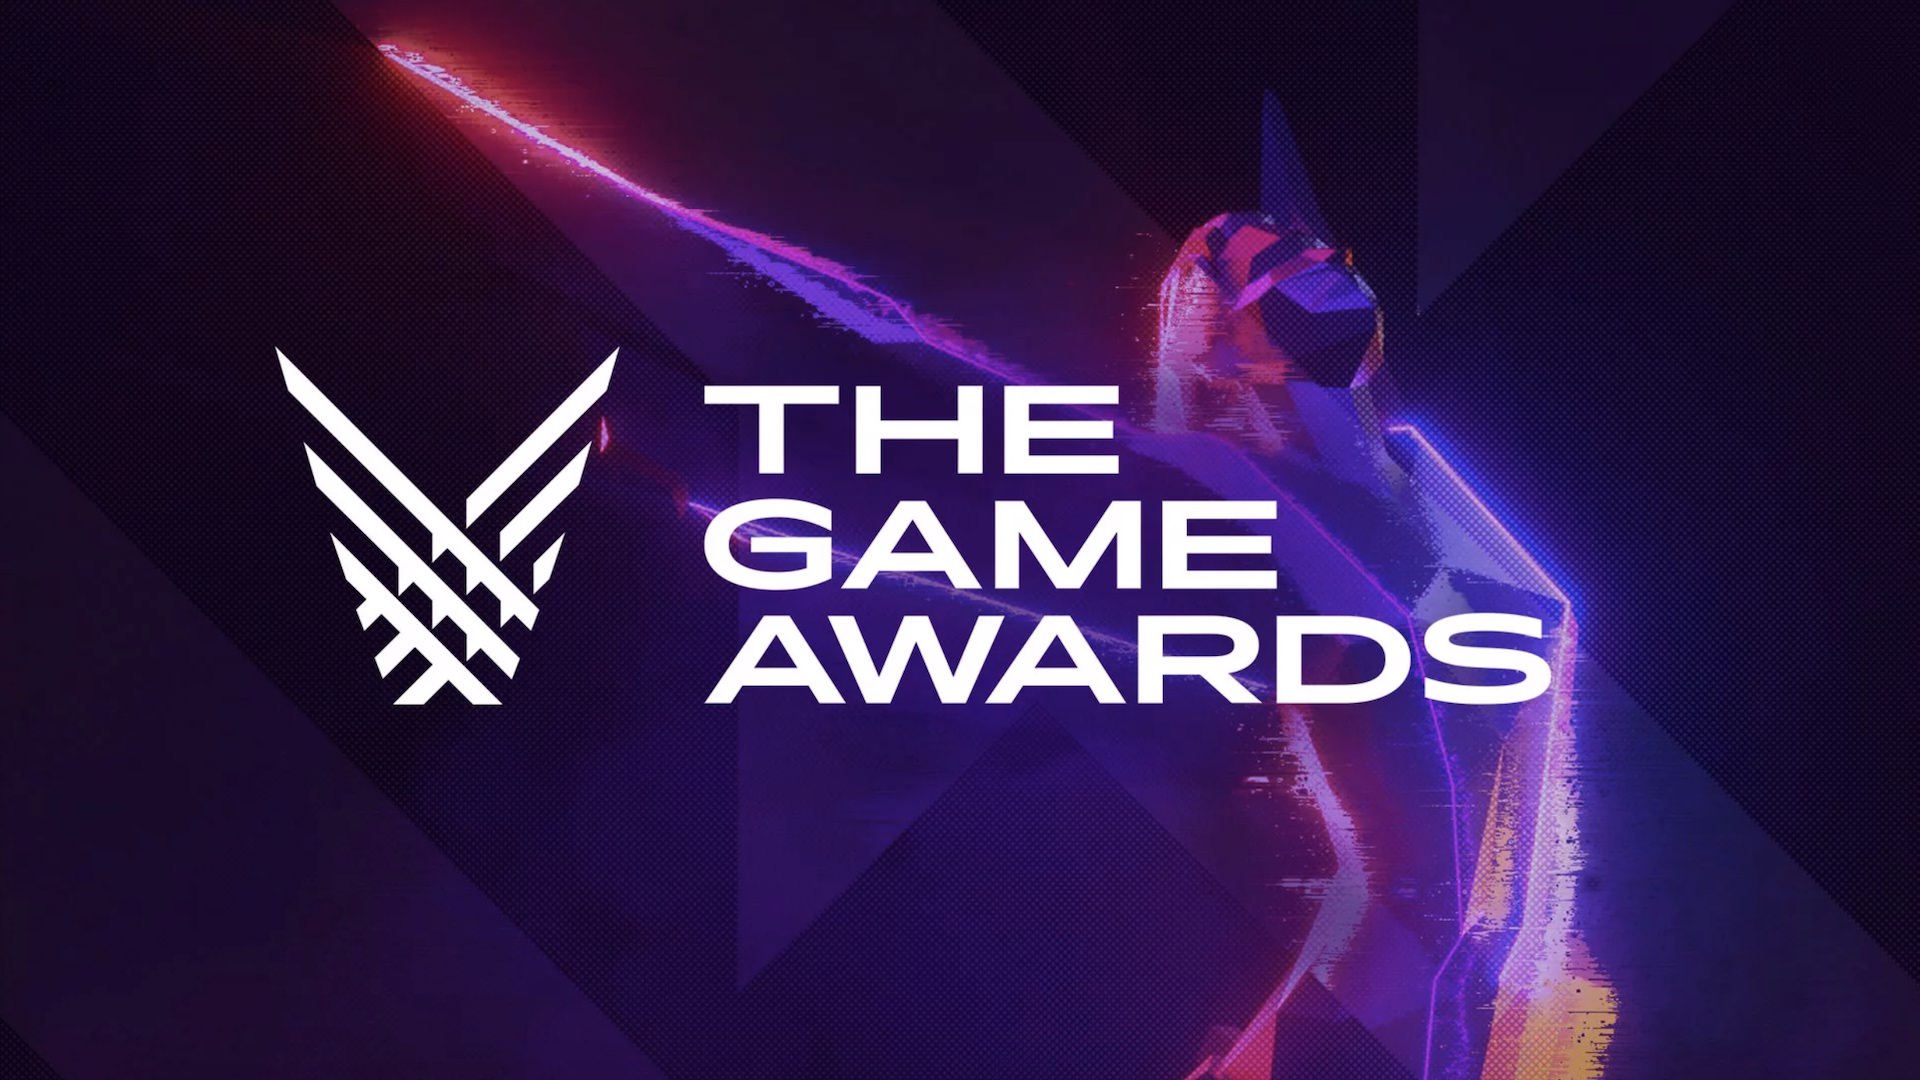 برندگان جوایز Game Awards 2019 اعلام شدند؛ Sekiro: Shadows Die Twice بهترین بازی سال